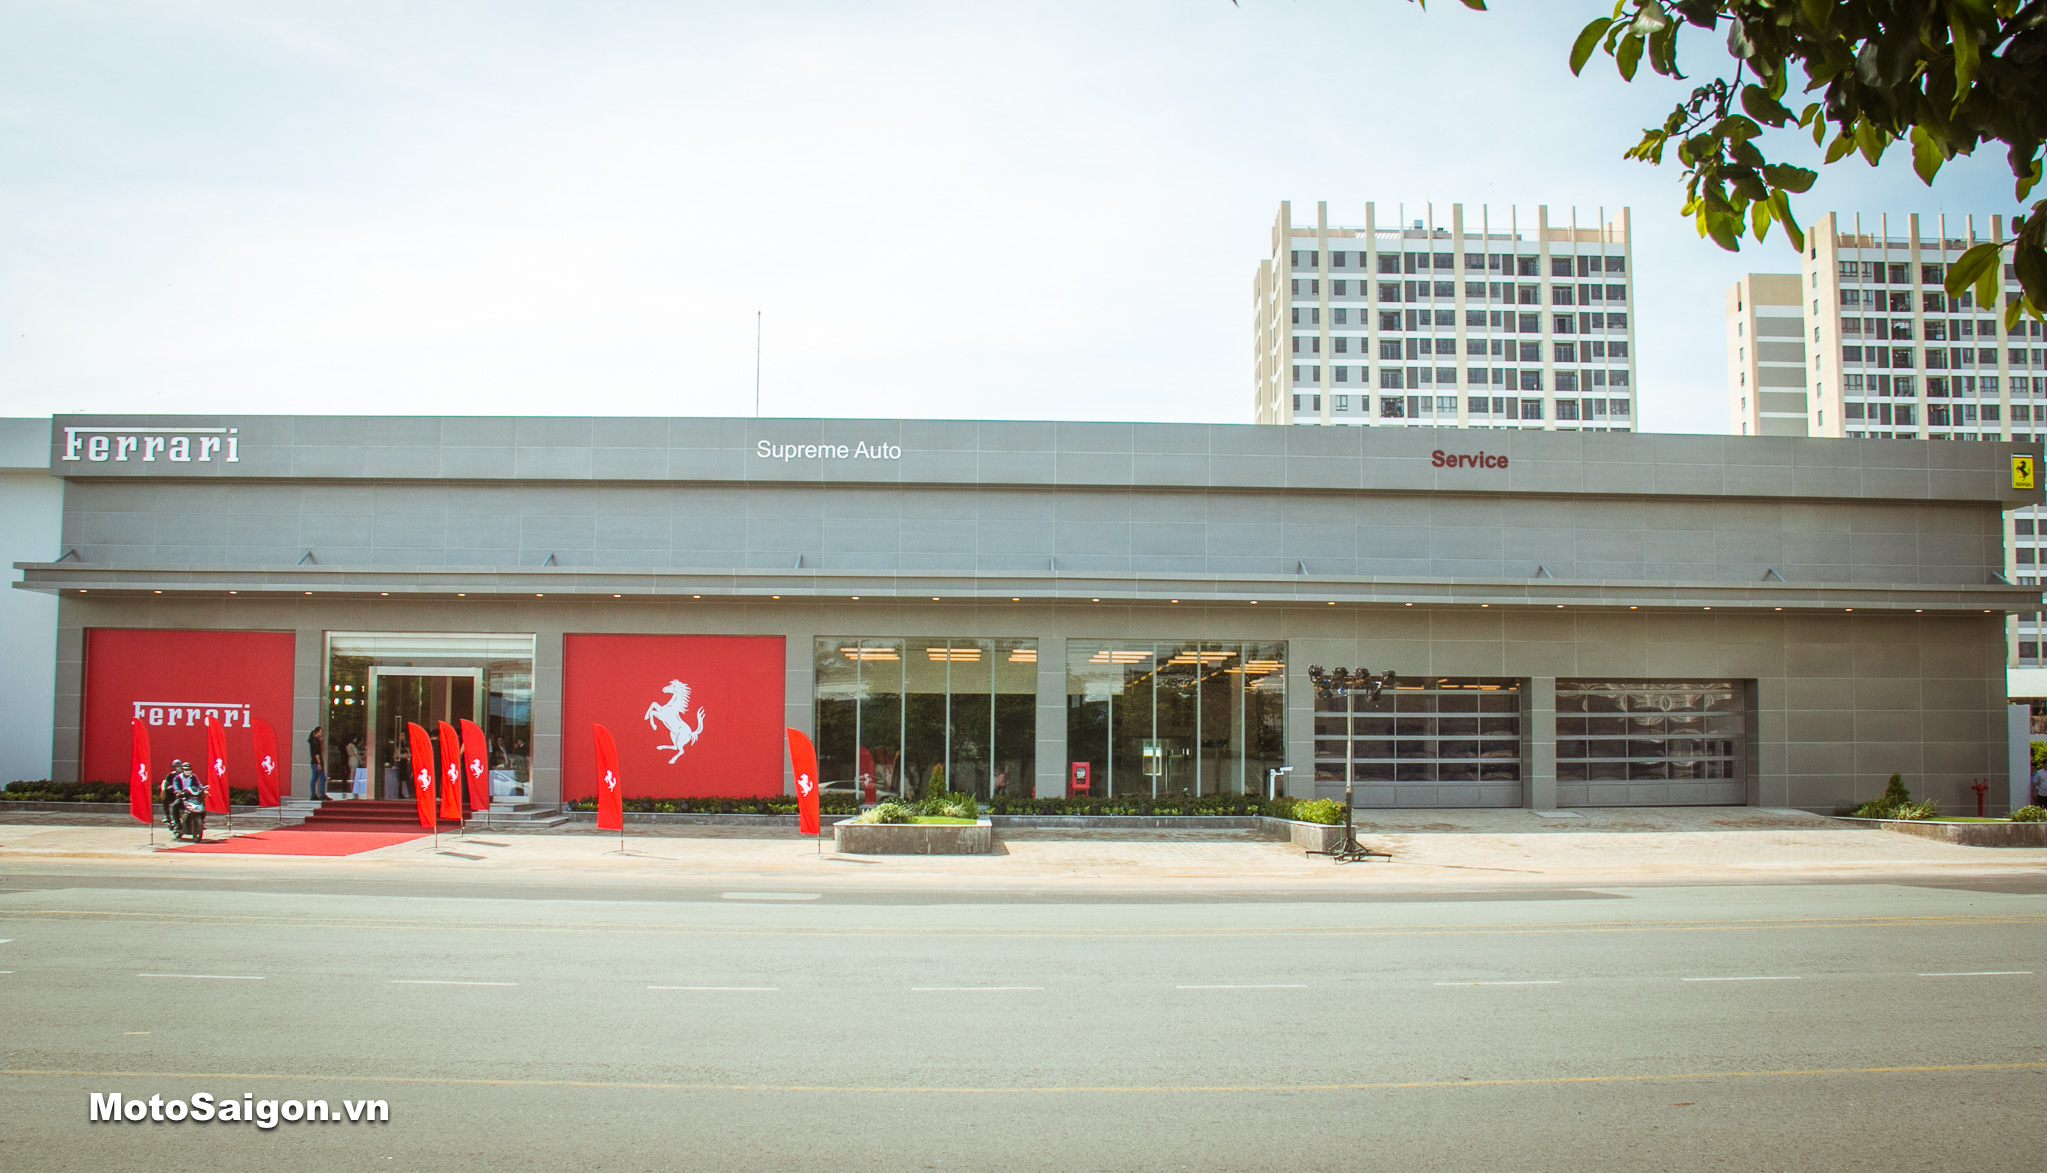 Showroom Ferrari Vietnam tọa lạc tại Khu chế xuất Tân Thuận, Quận 7 TPHCM